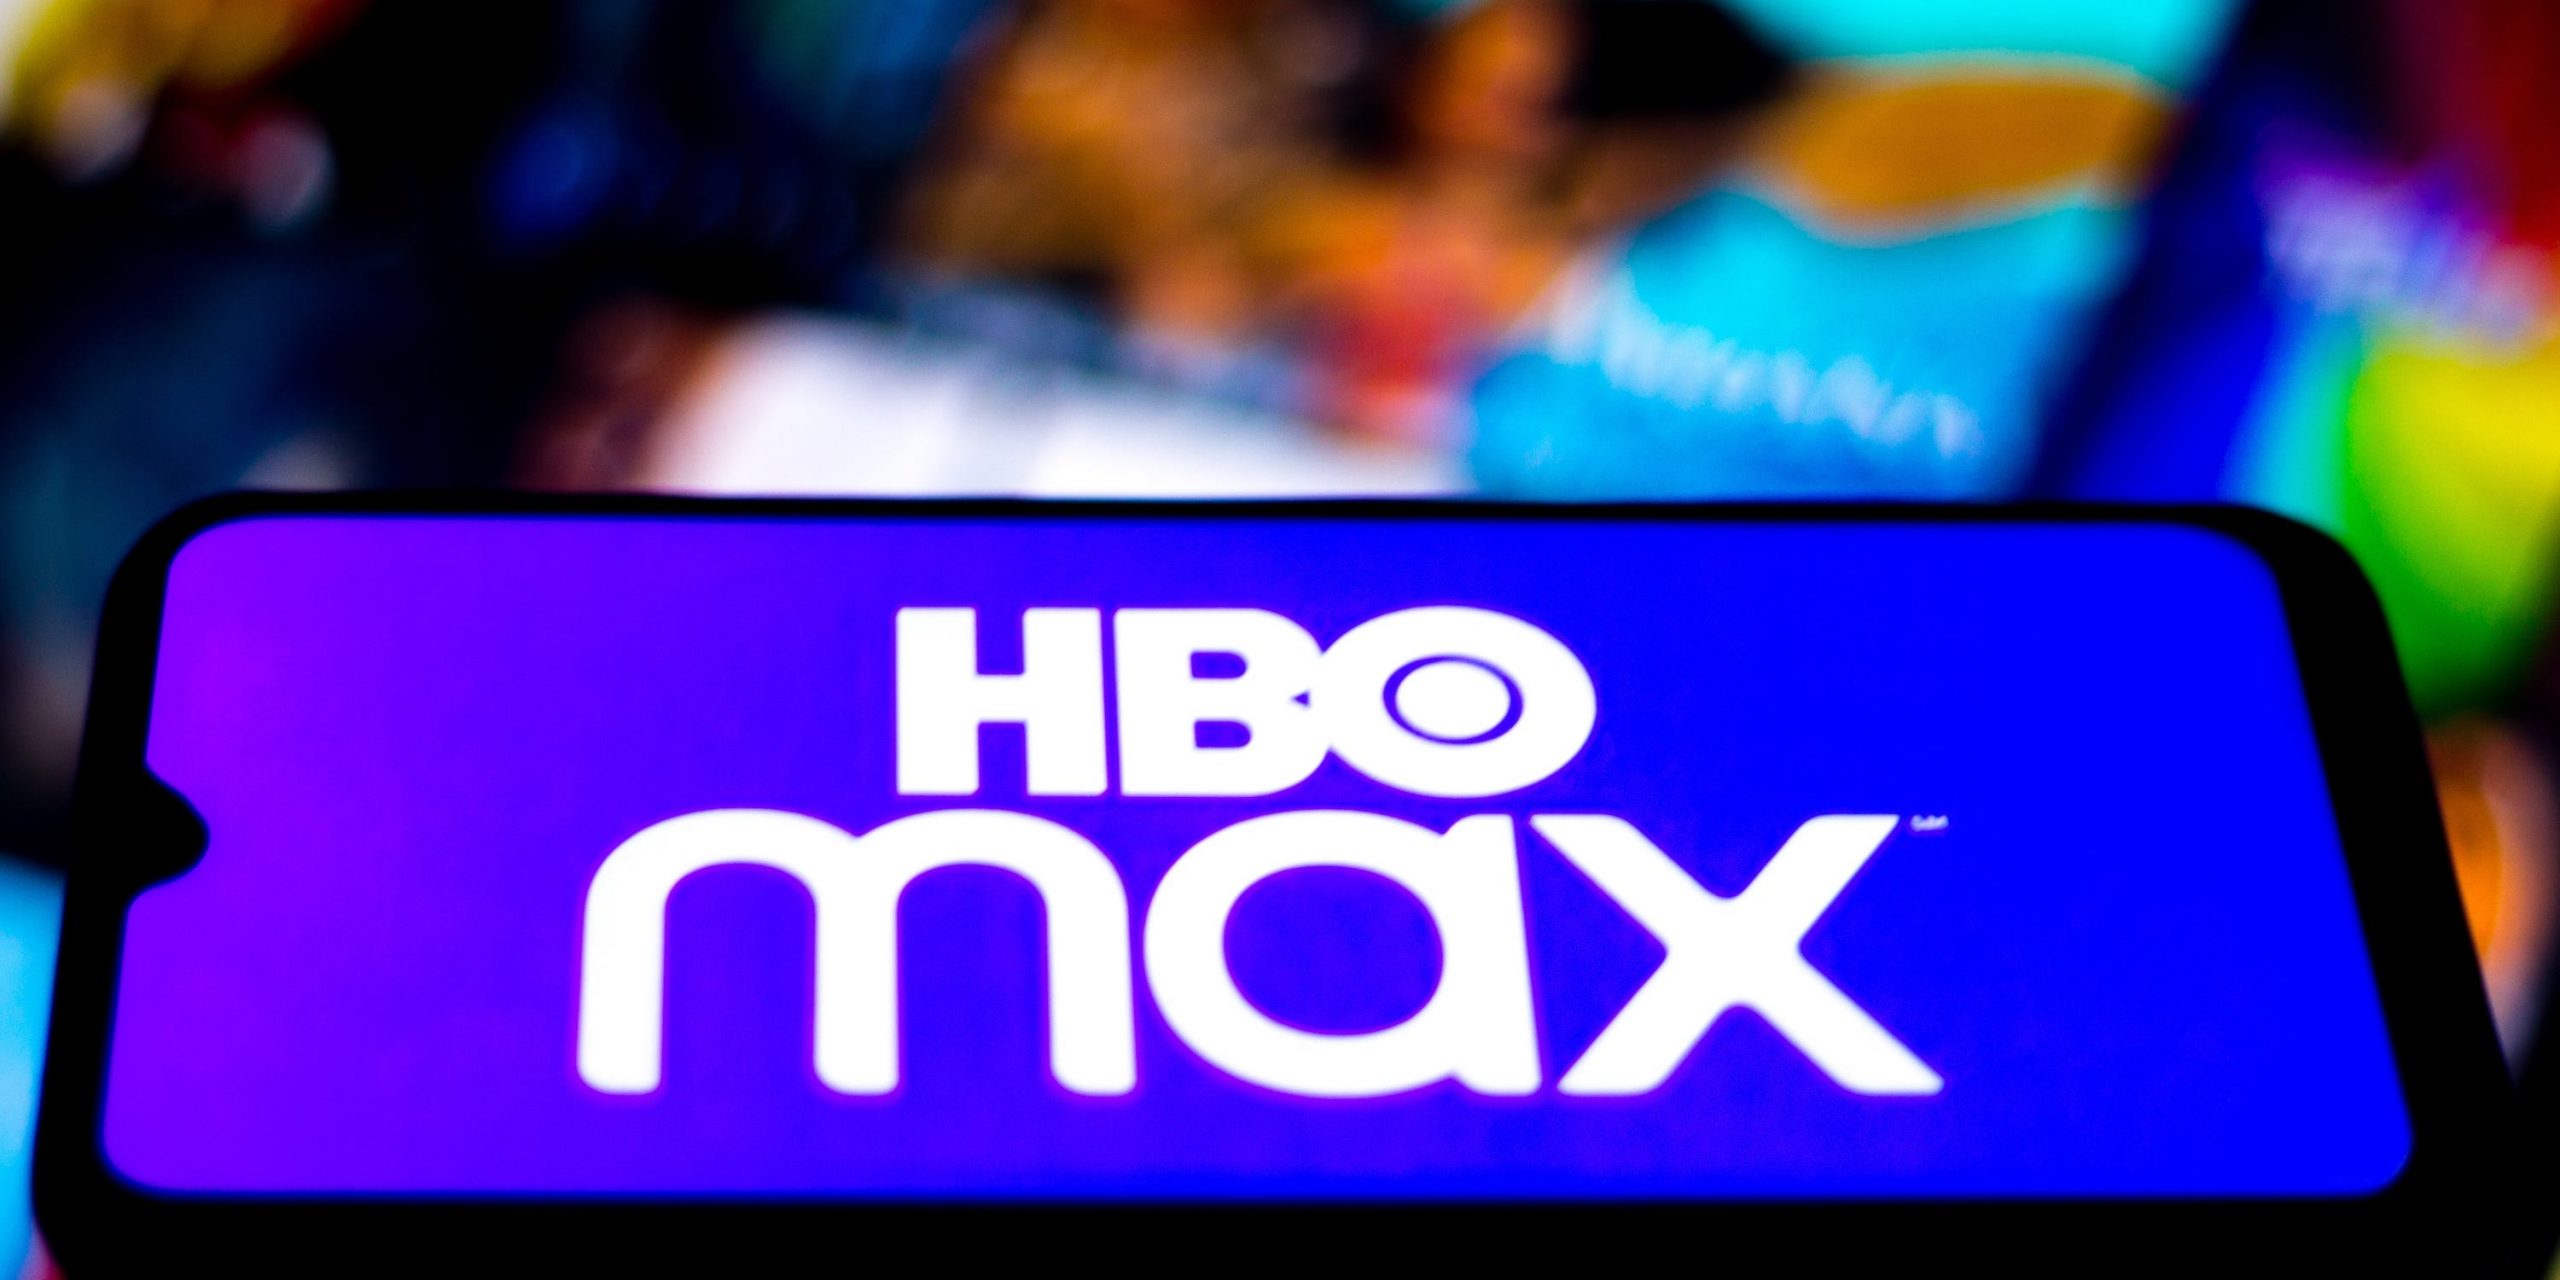 HBO Max app logo